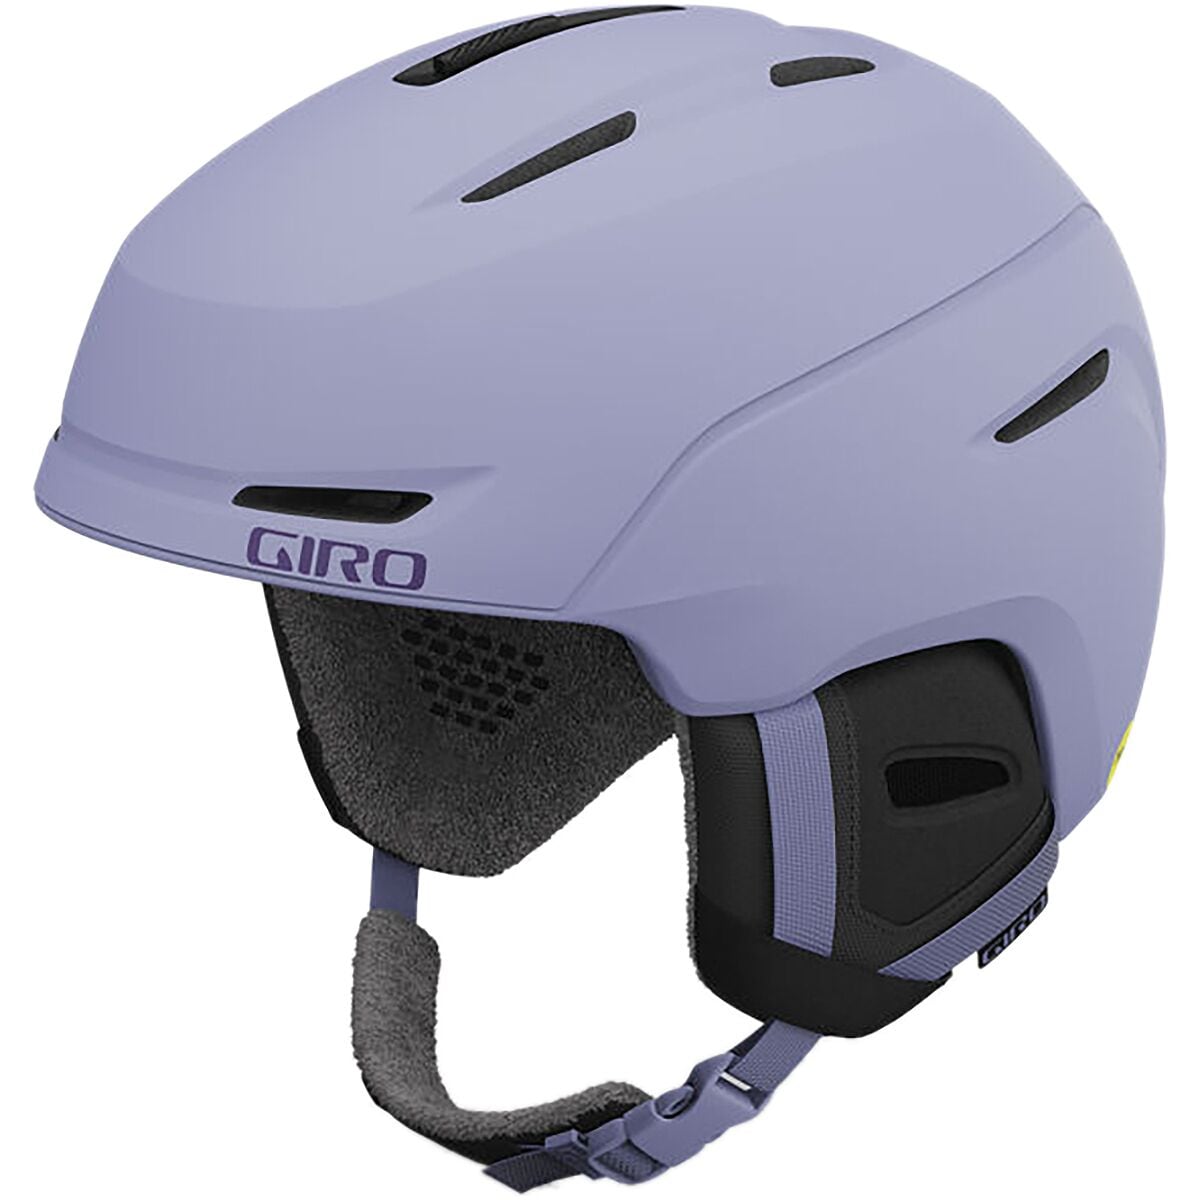 Giro Avera Mips Helmet - Women's